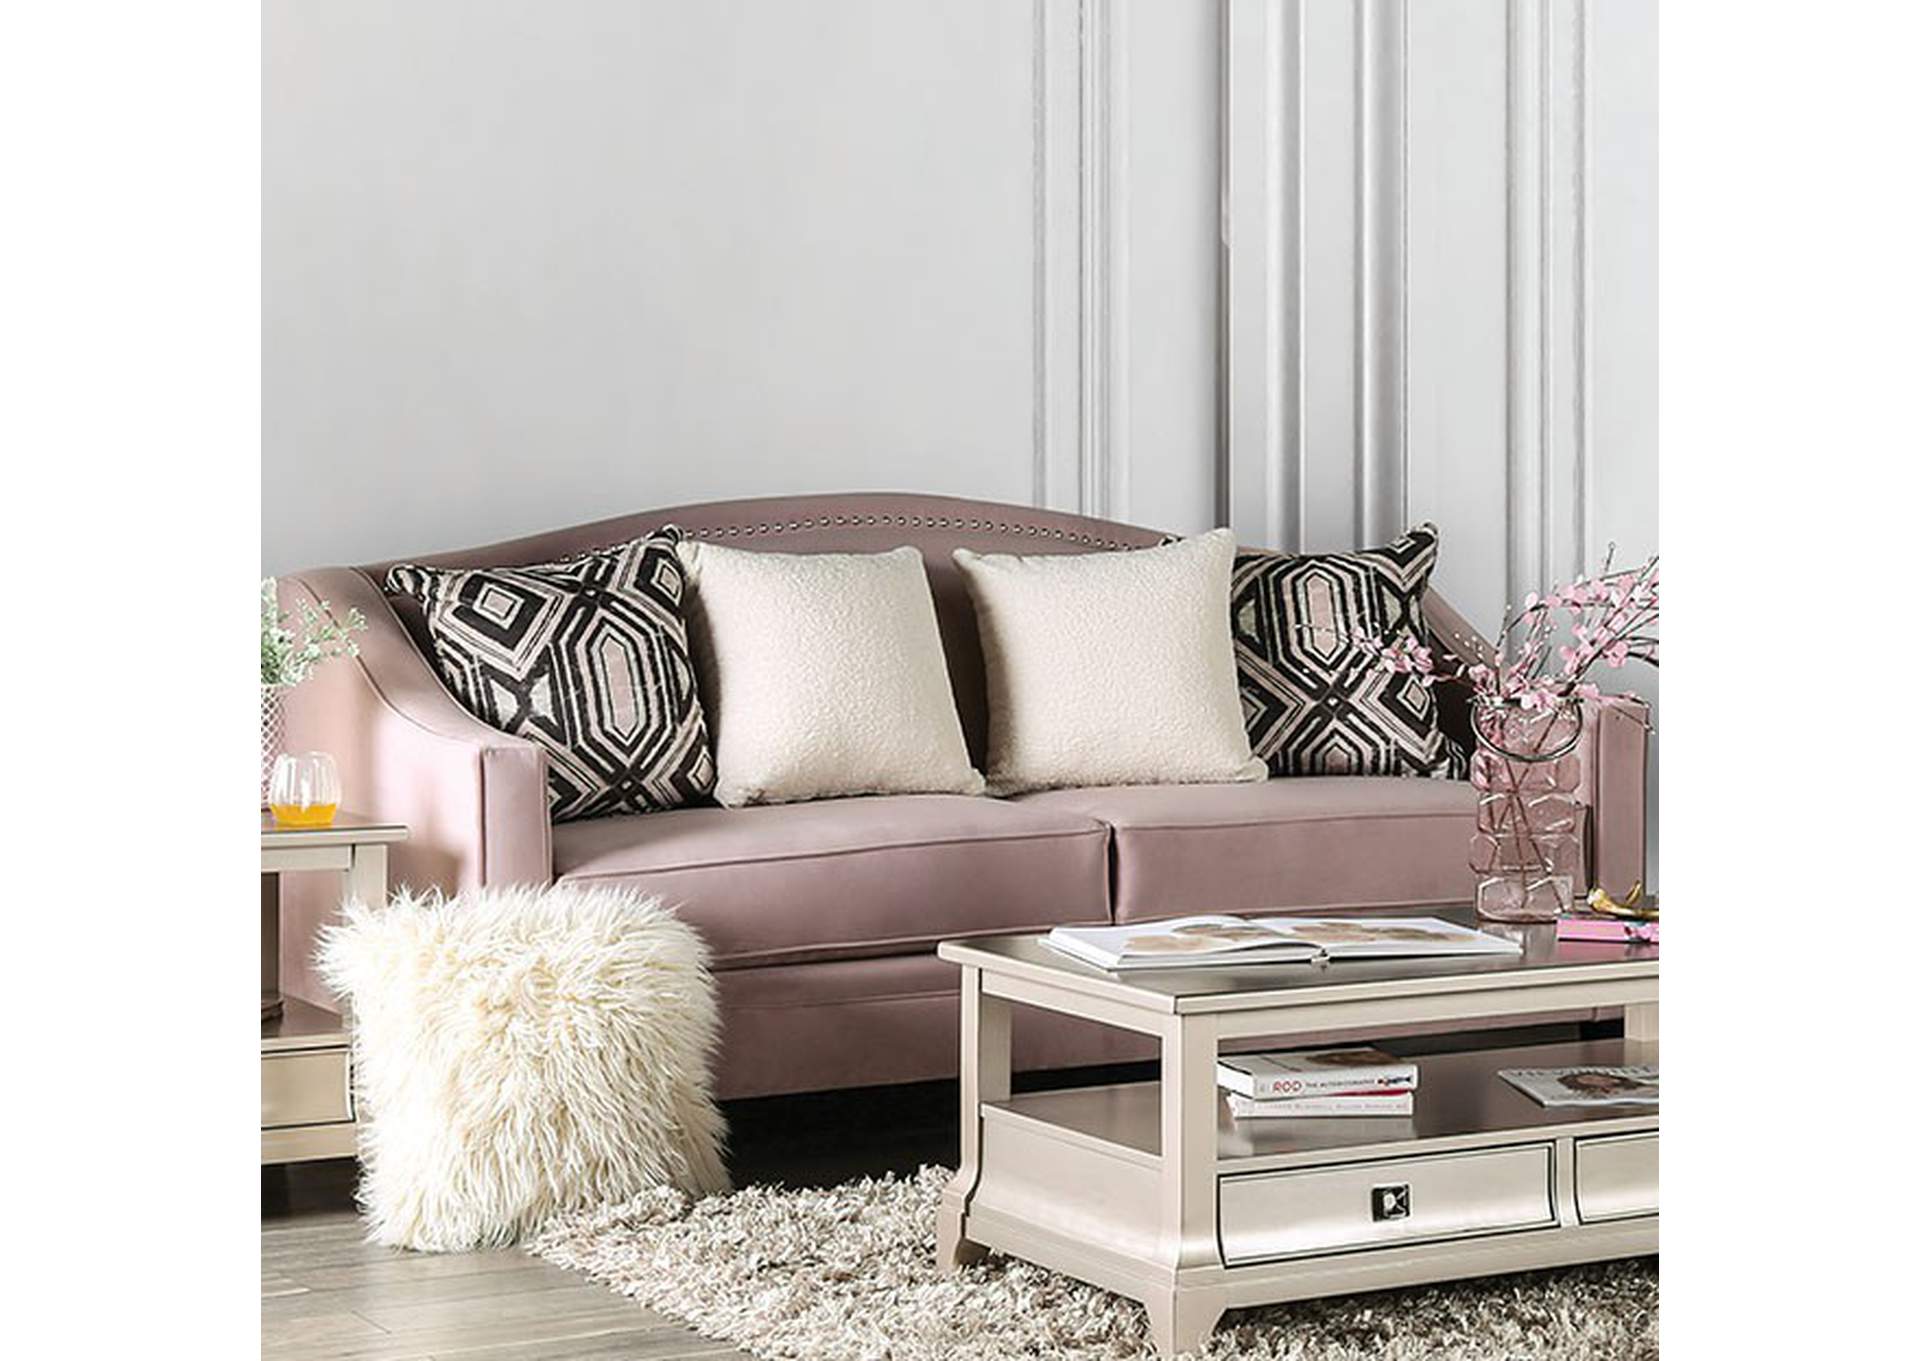 Campana Sofa,Furniture of America